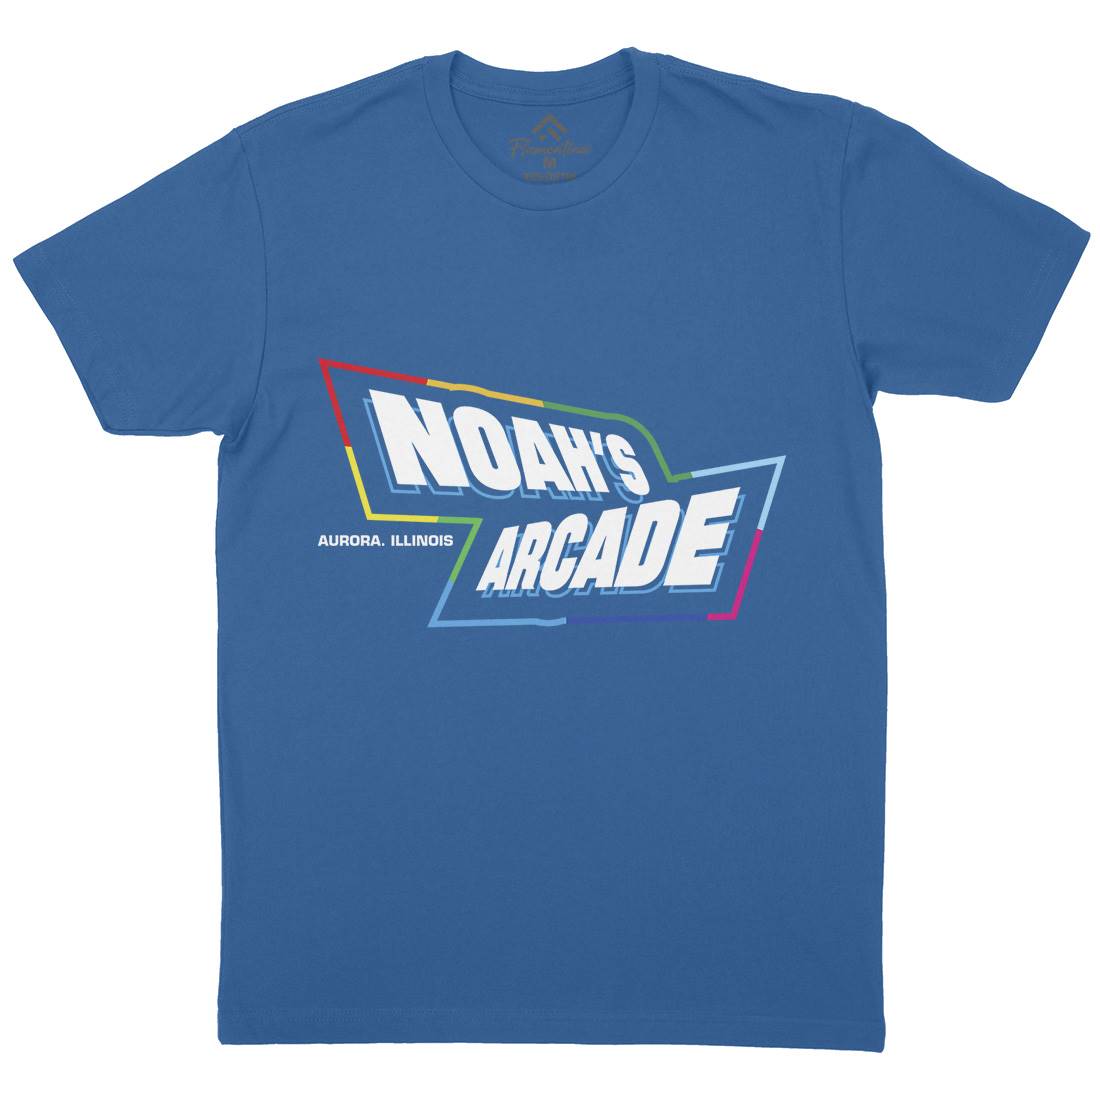 Noahs Arcade Mens Crew Neck T-Shirt Retro D298